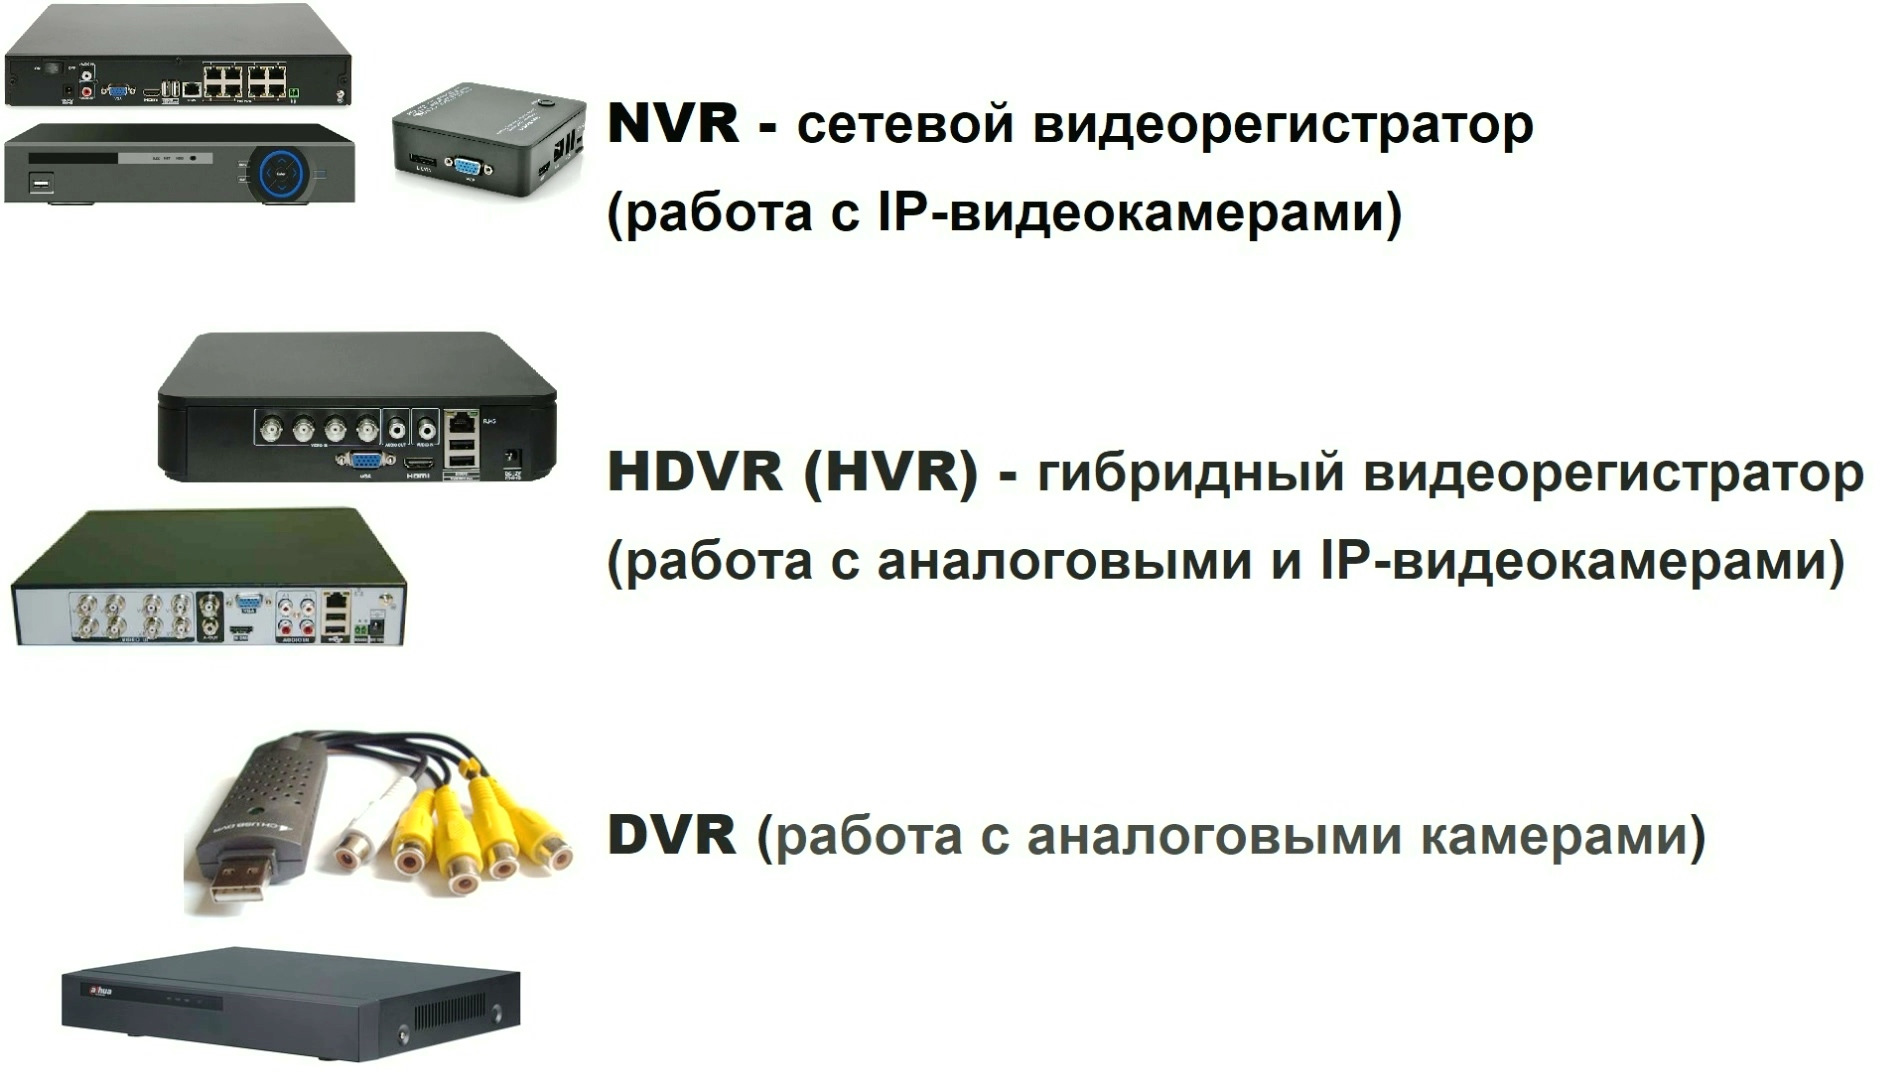 Видеорегистратор не видит камеру. Типы видеорегистраторов. Видеорегистратор на 9 камер аналоговые. HVR (HDVR). Гибридный видеорегистратор монитор.